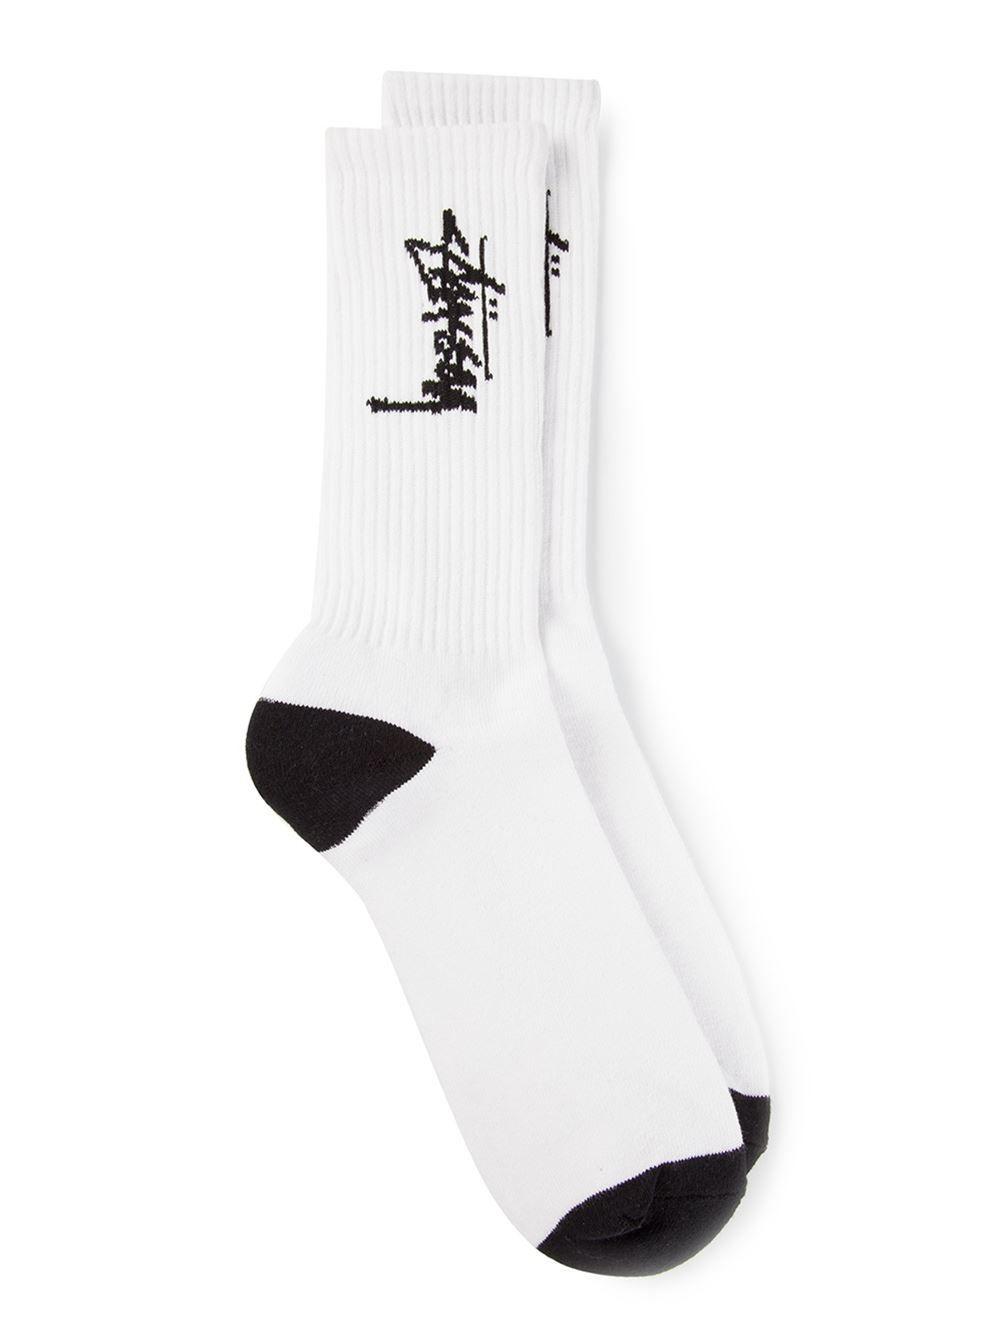 White Socks Logo - Stussy Black Detailed Logo Socks in White for Men - Lyst